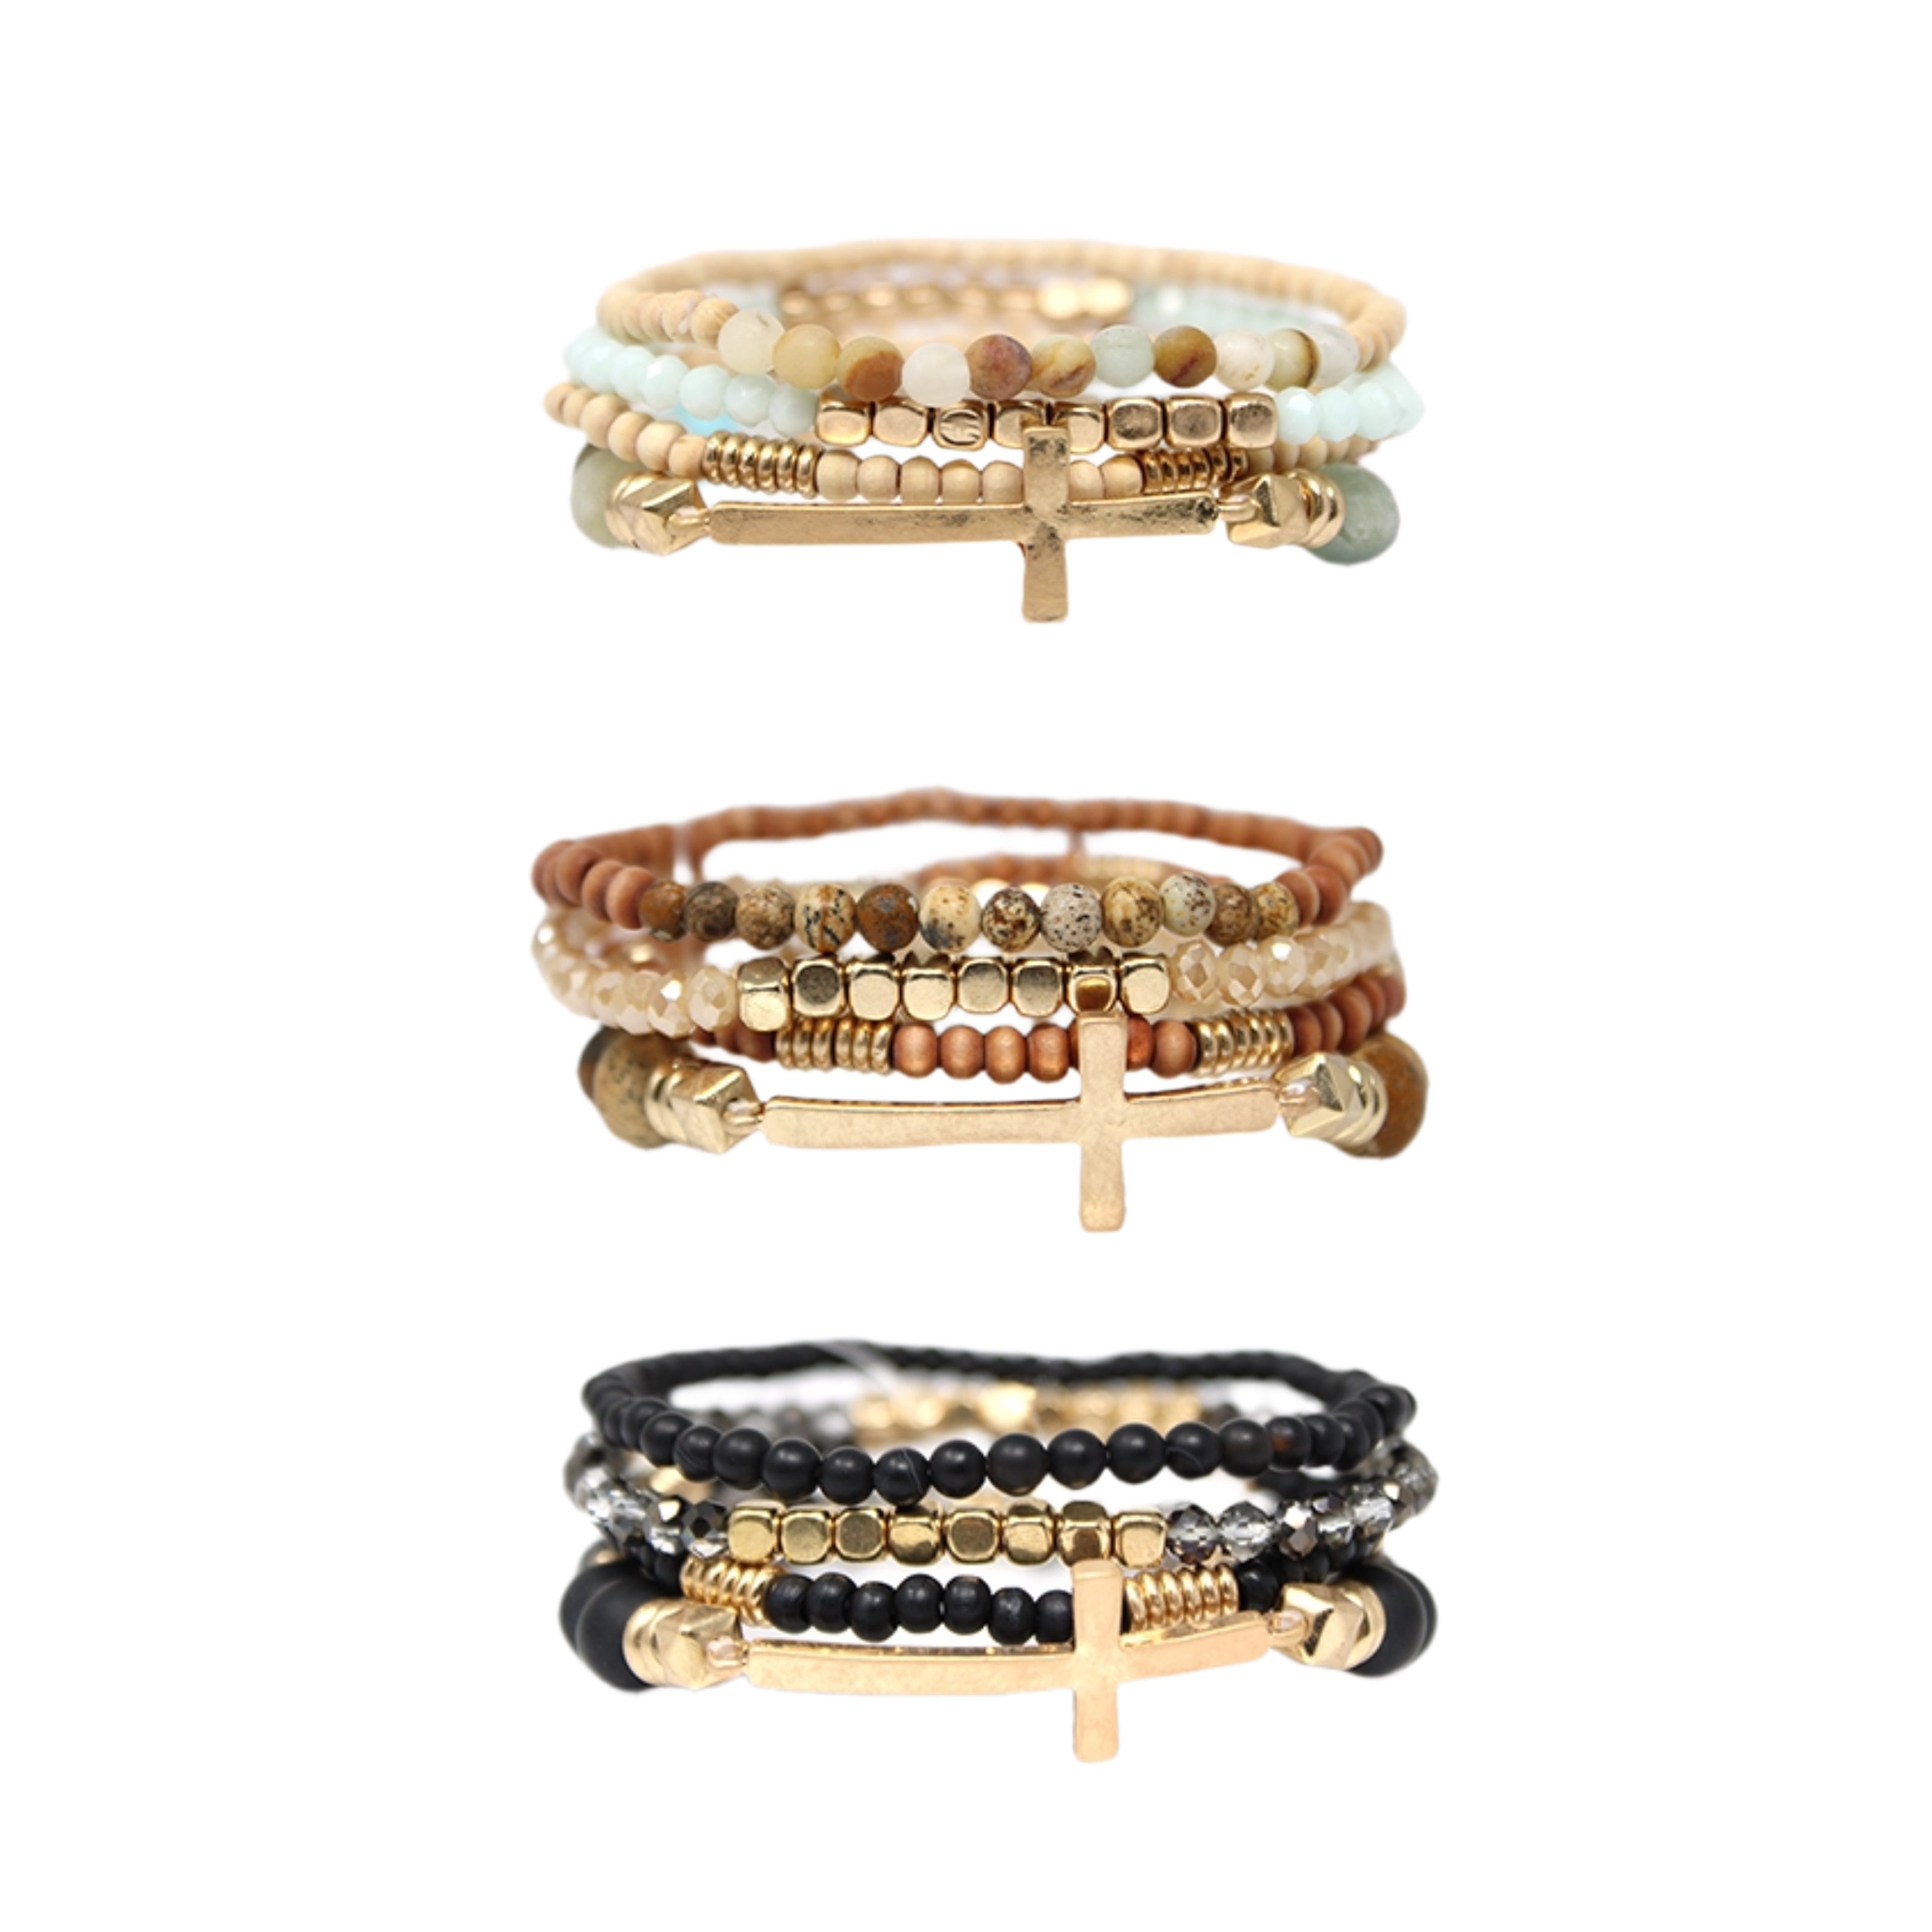 Gold cross layered stack bracelets